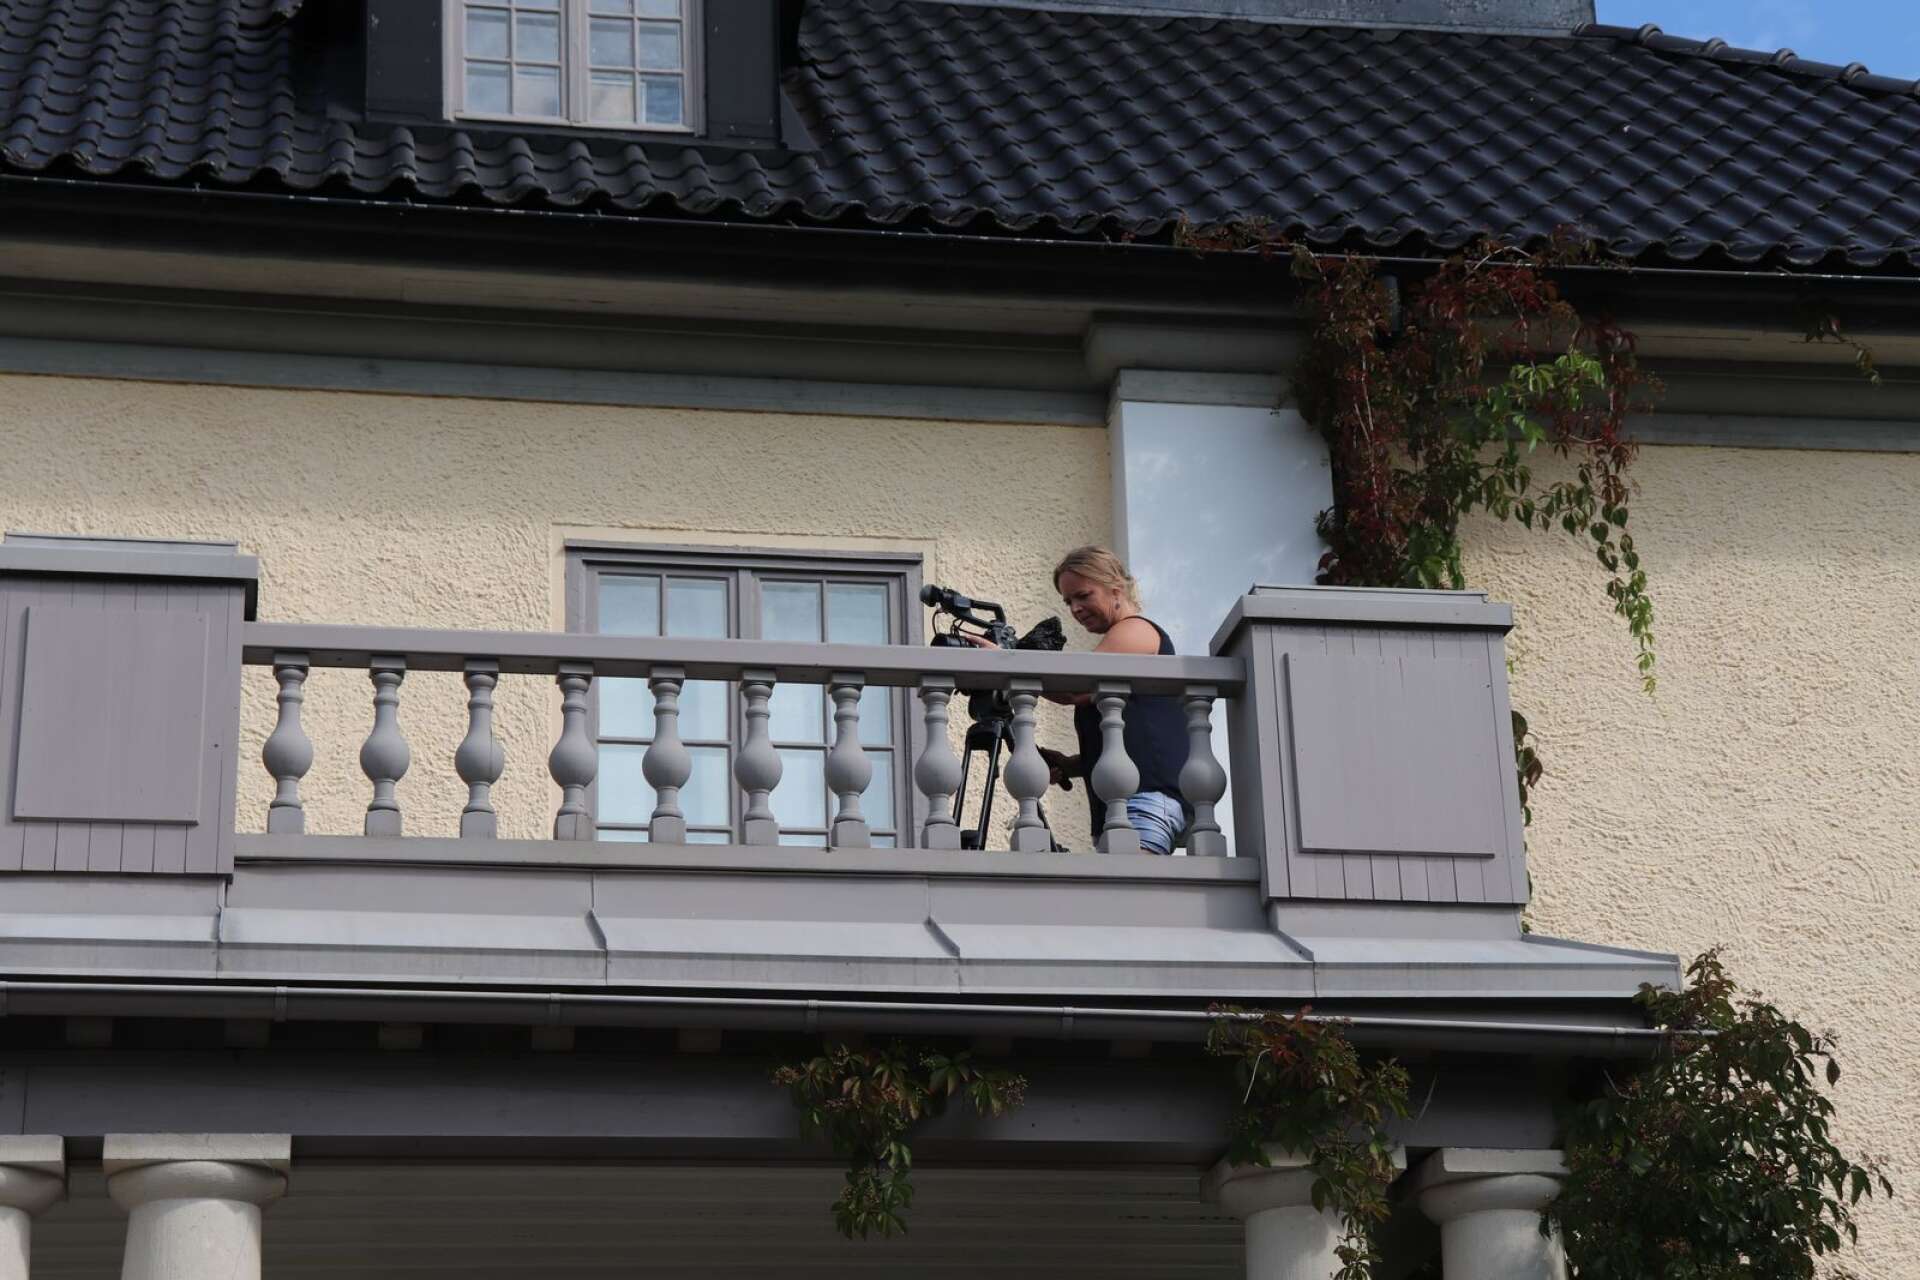 Fotografen Gro Pedersen Westgård filmar från balkongen på Mårbacka.